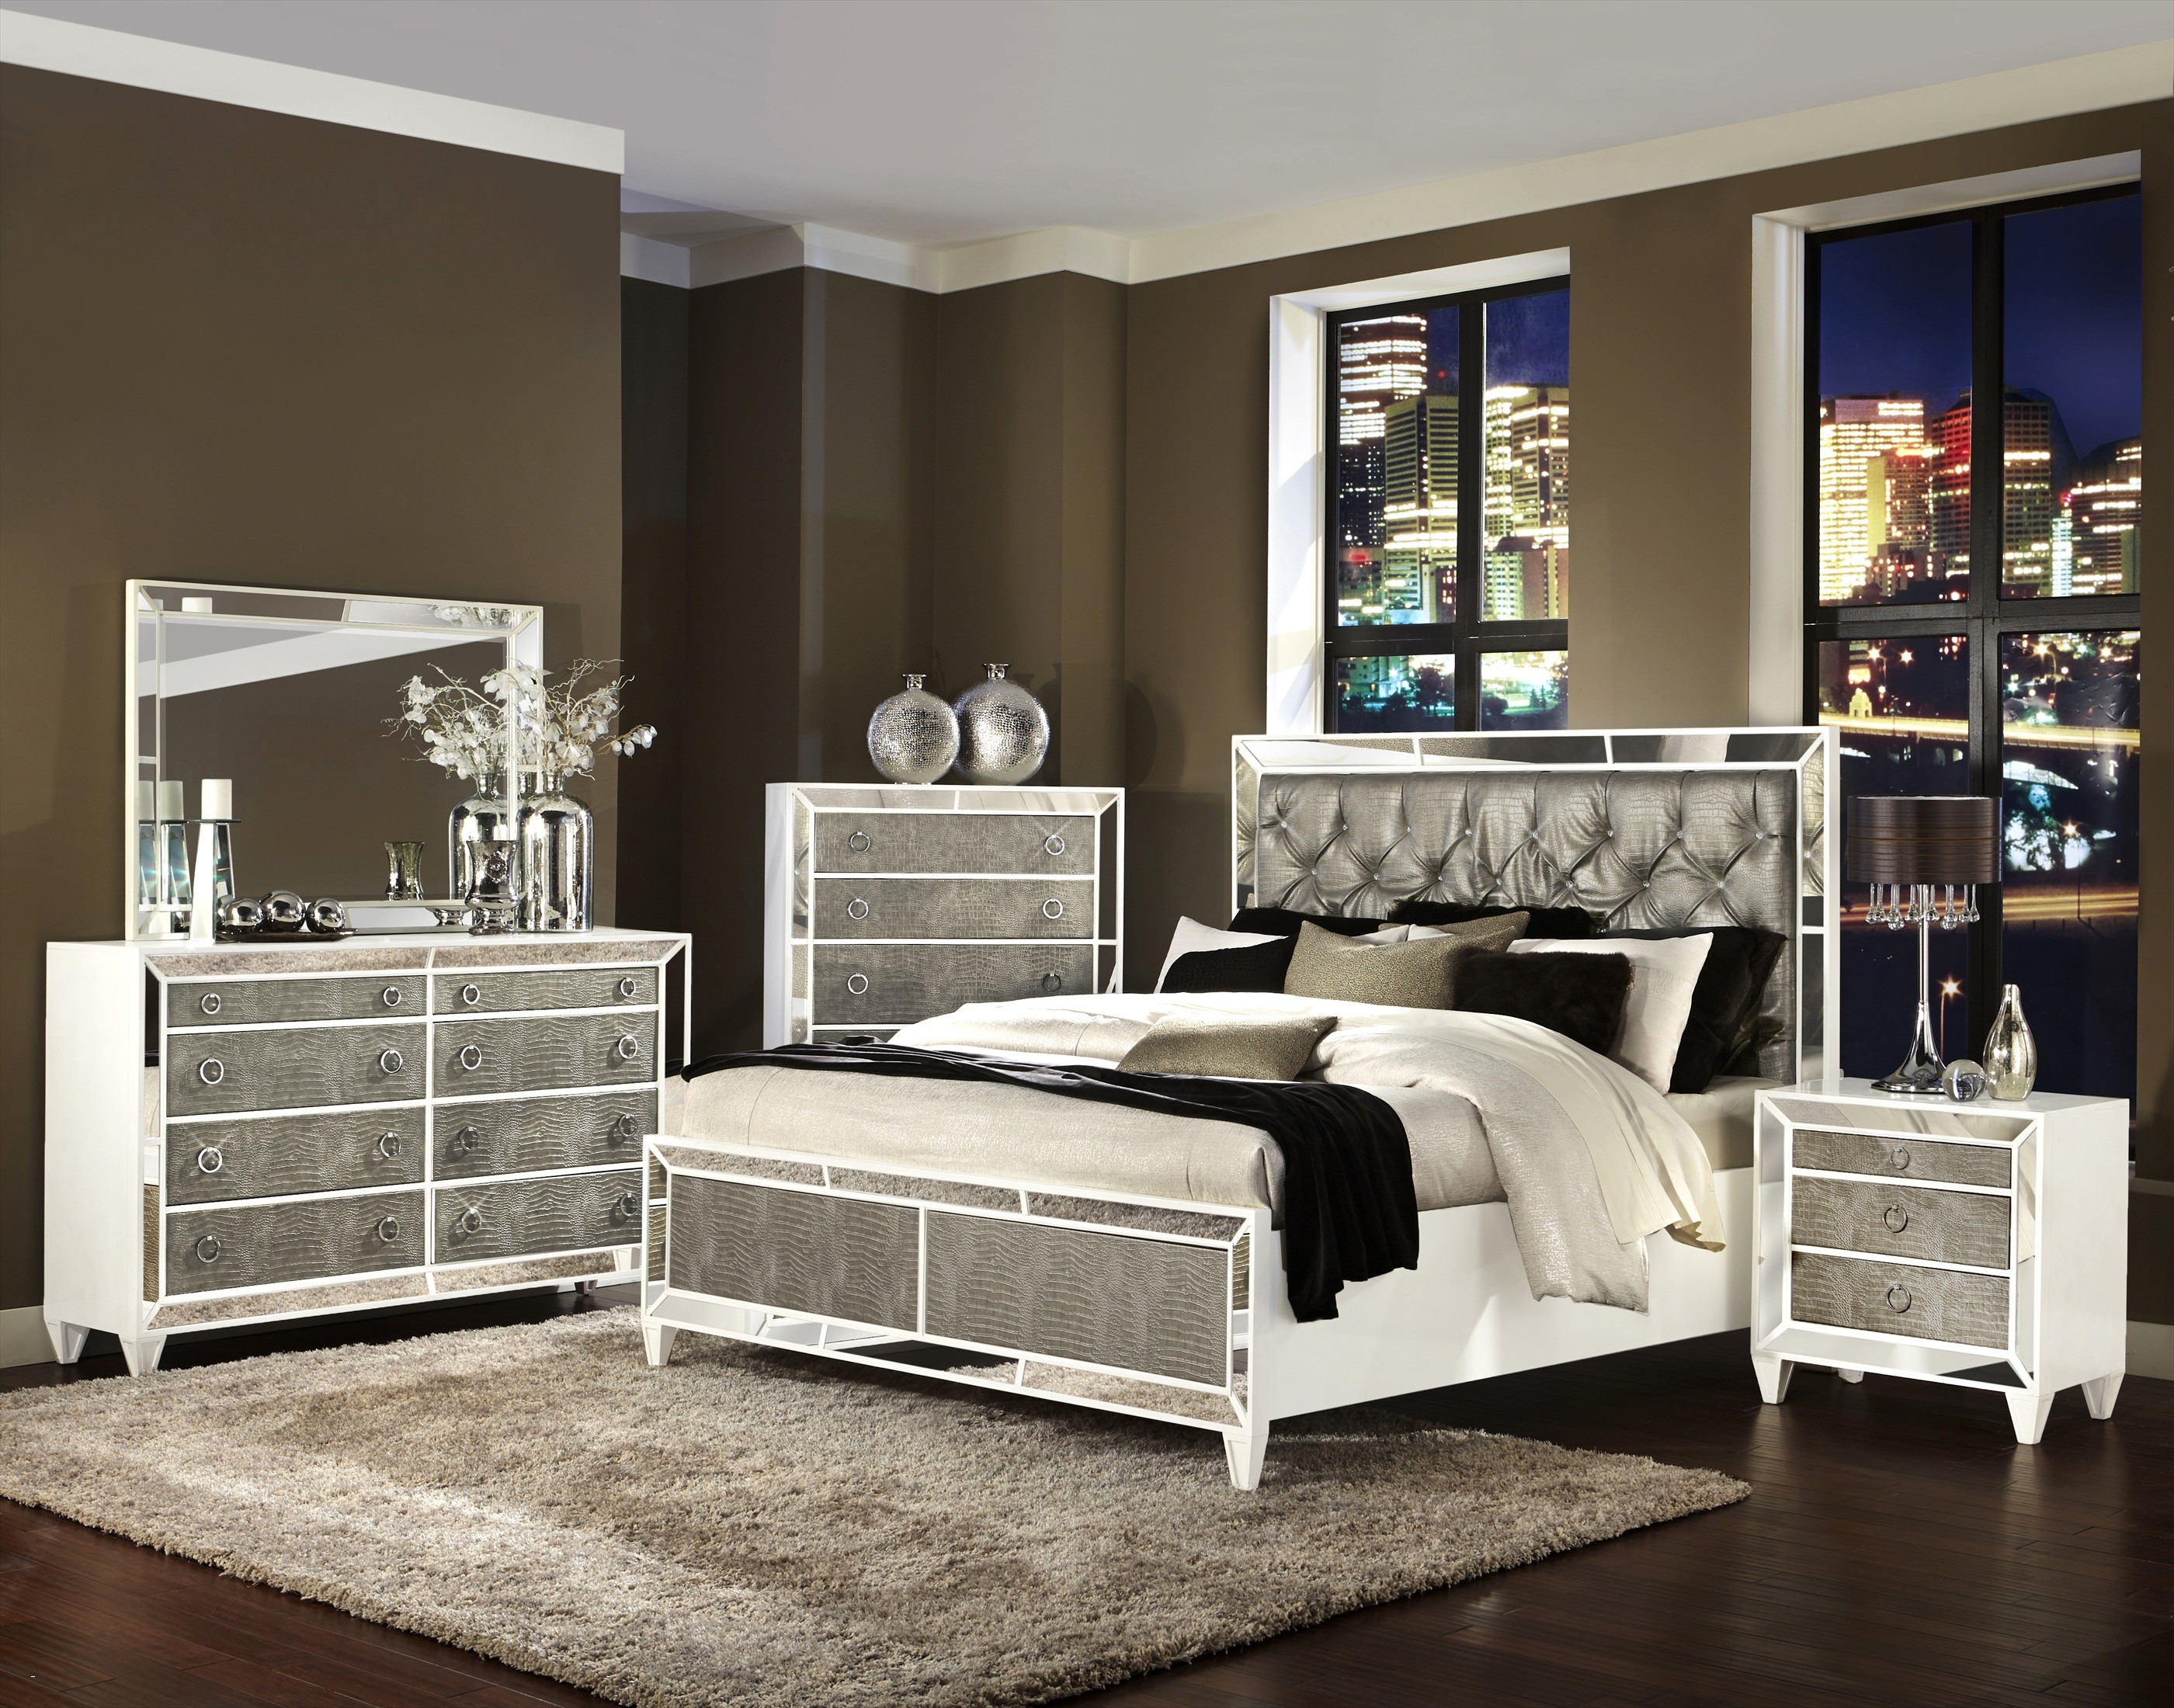 Bedroom Master Bedroom Furniture Sets Interesting On In King New Mirrored Black 8 Master Bedroom Furniture Sets